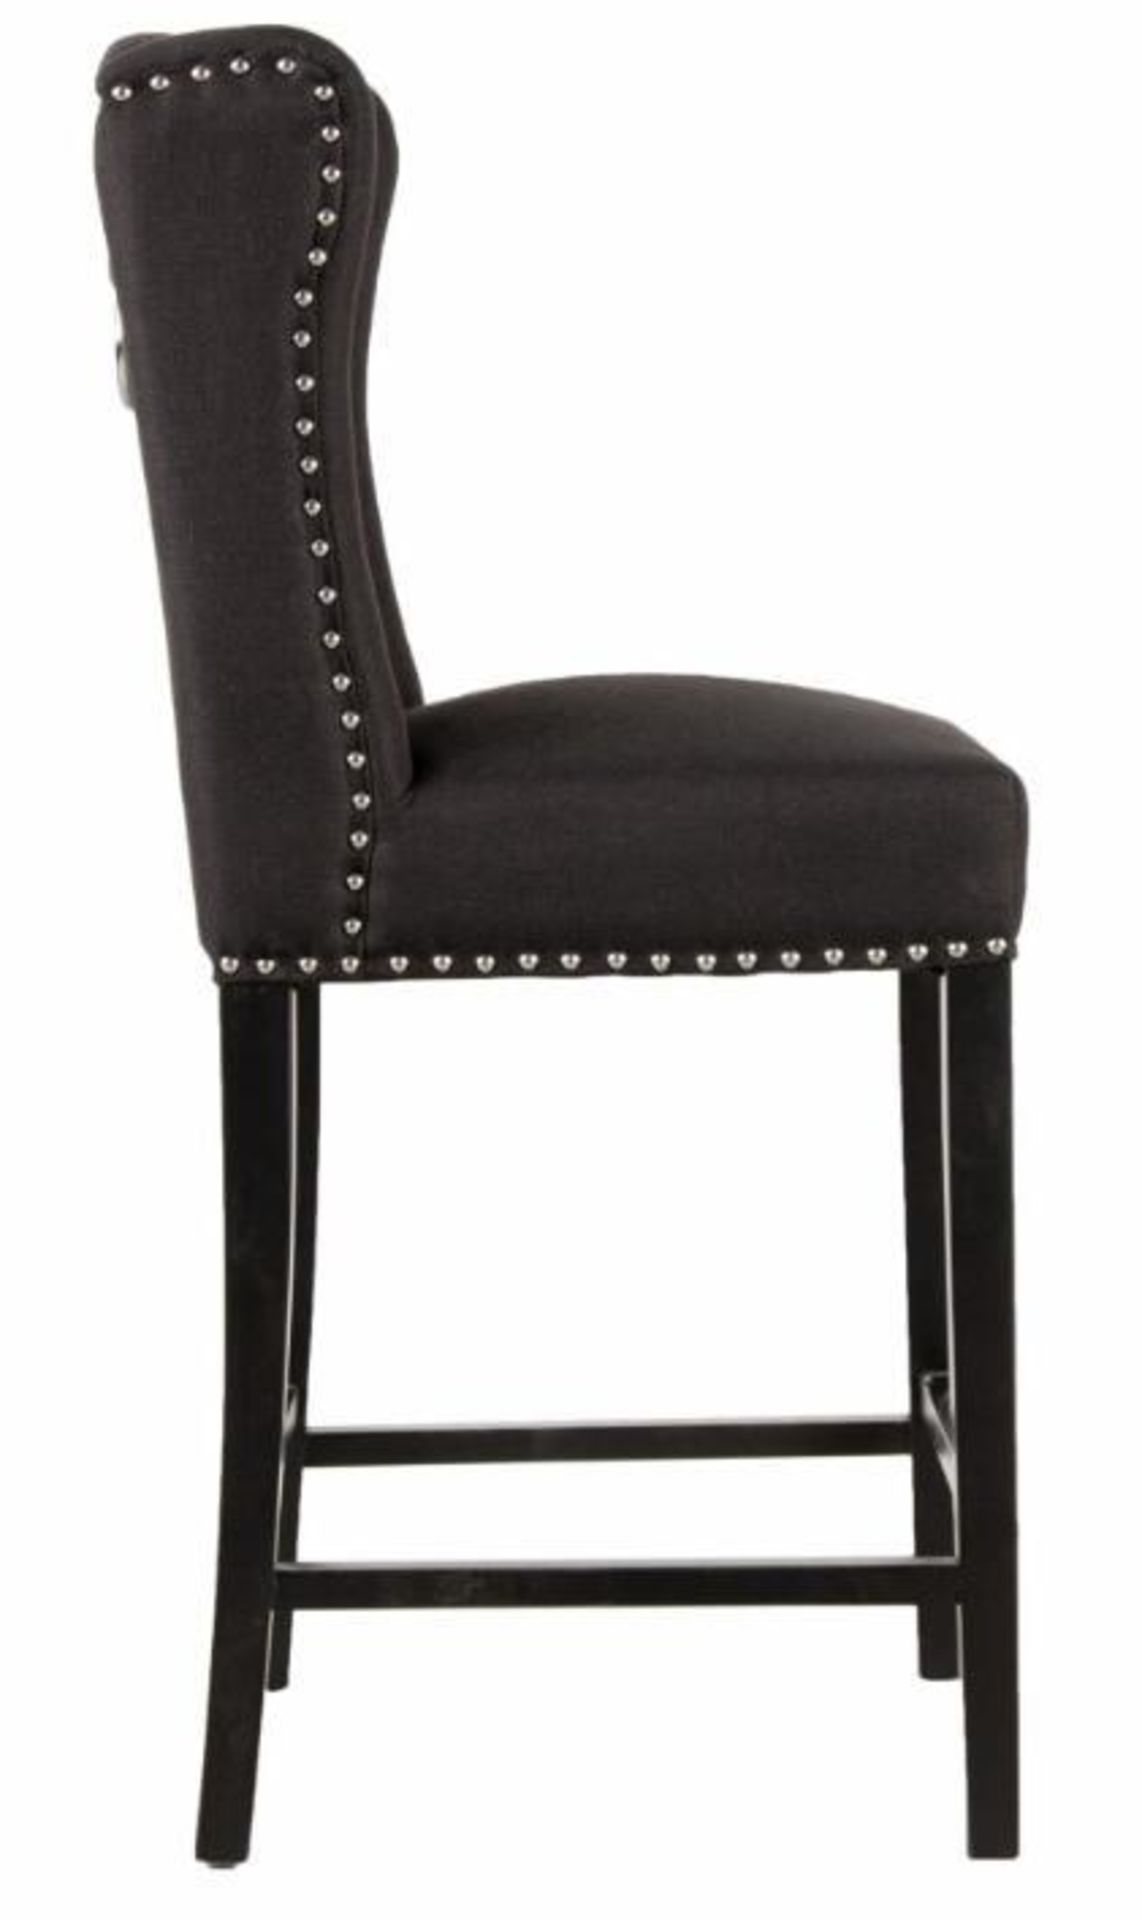 2 x HOUSE OF SPARKLES Luxury Wing Back Bar Stools Richly Upholstered In Black Velvet - Brand New - Image 4 of 8